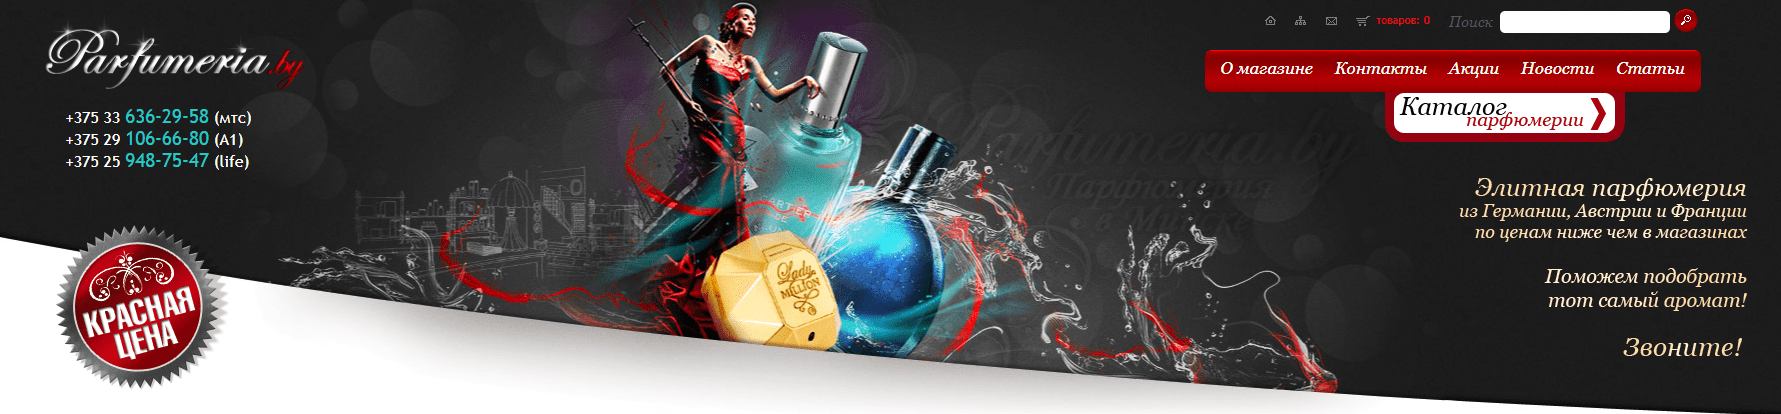 Parfumeria.by – официальный сайт